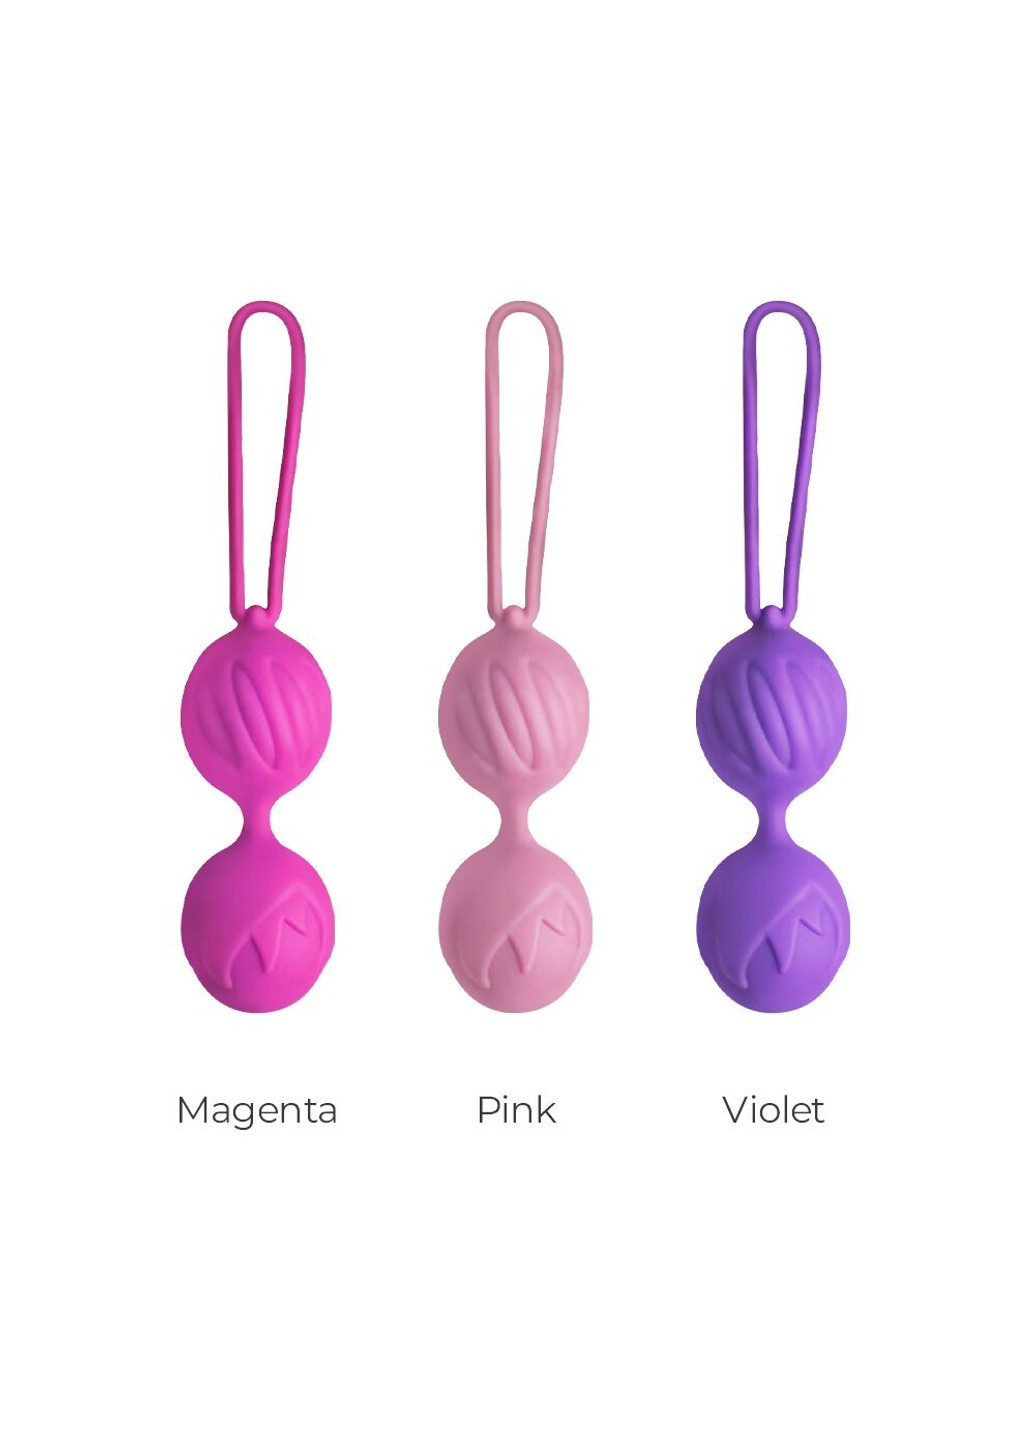 Вагинальные шарики Geisha Lastic Balls Mini Pink (S), диаметр 3,4 см, масса 85 г Adrien Lastic (276390074)